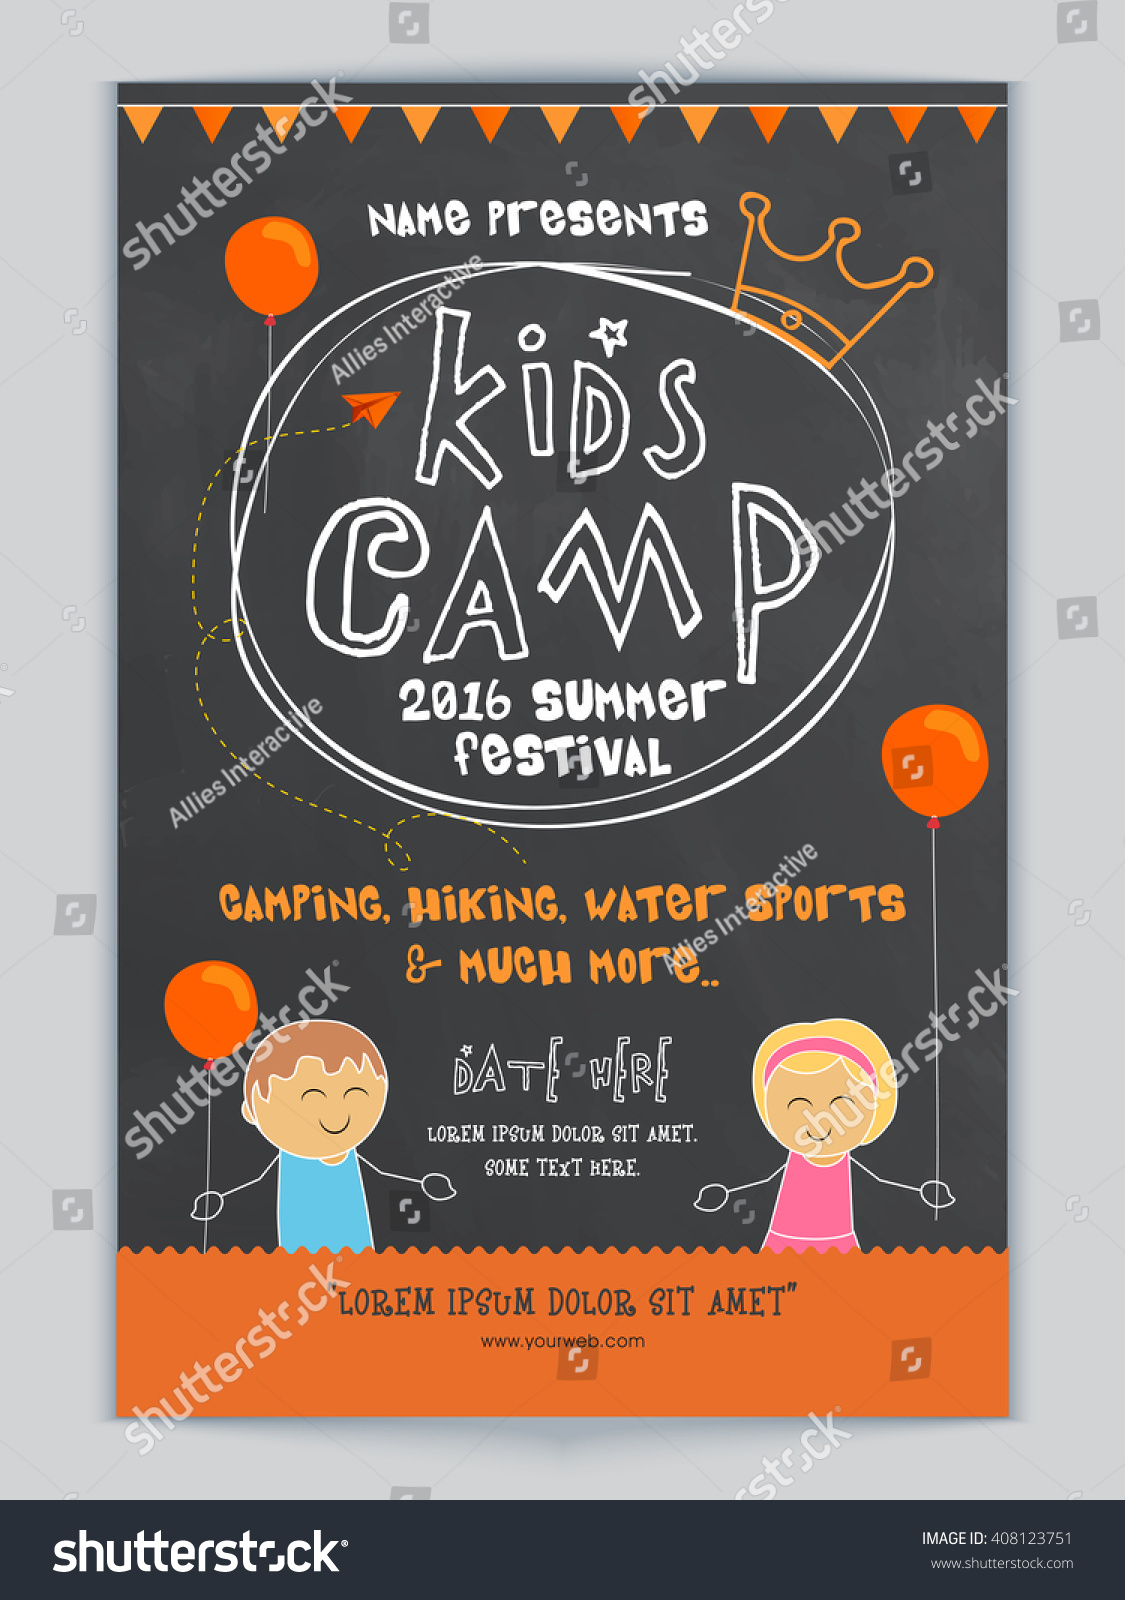 キッズキャンプ 夏祭りのお祝いテンプレート バナー チラシのデザイン かわいい子どもたちやパーティーの詳細をイラストにした画像 のベクター画像素材 ロイヤリティフリー